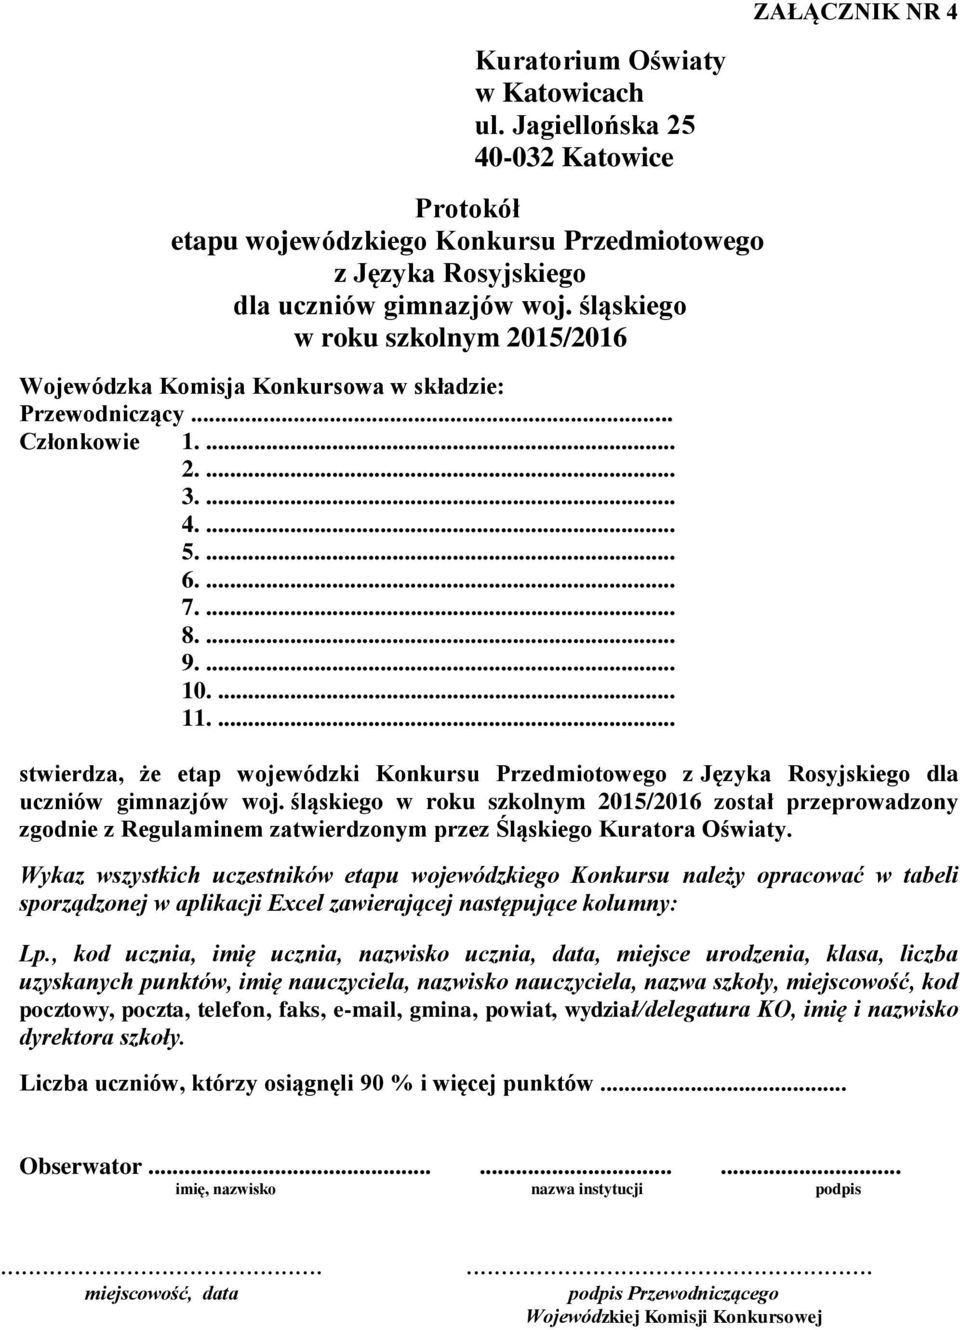 śląskiego został przeprowadzony zgodnie z Regulaminem zatwierdzonym przez Śląskiego Kuratora Oświaty.